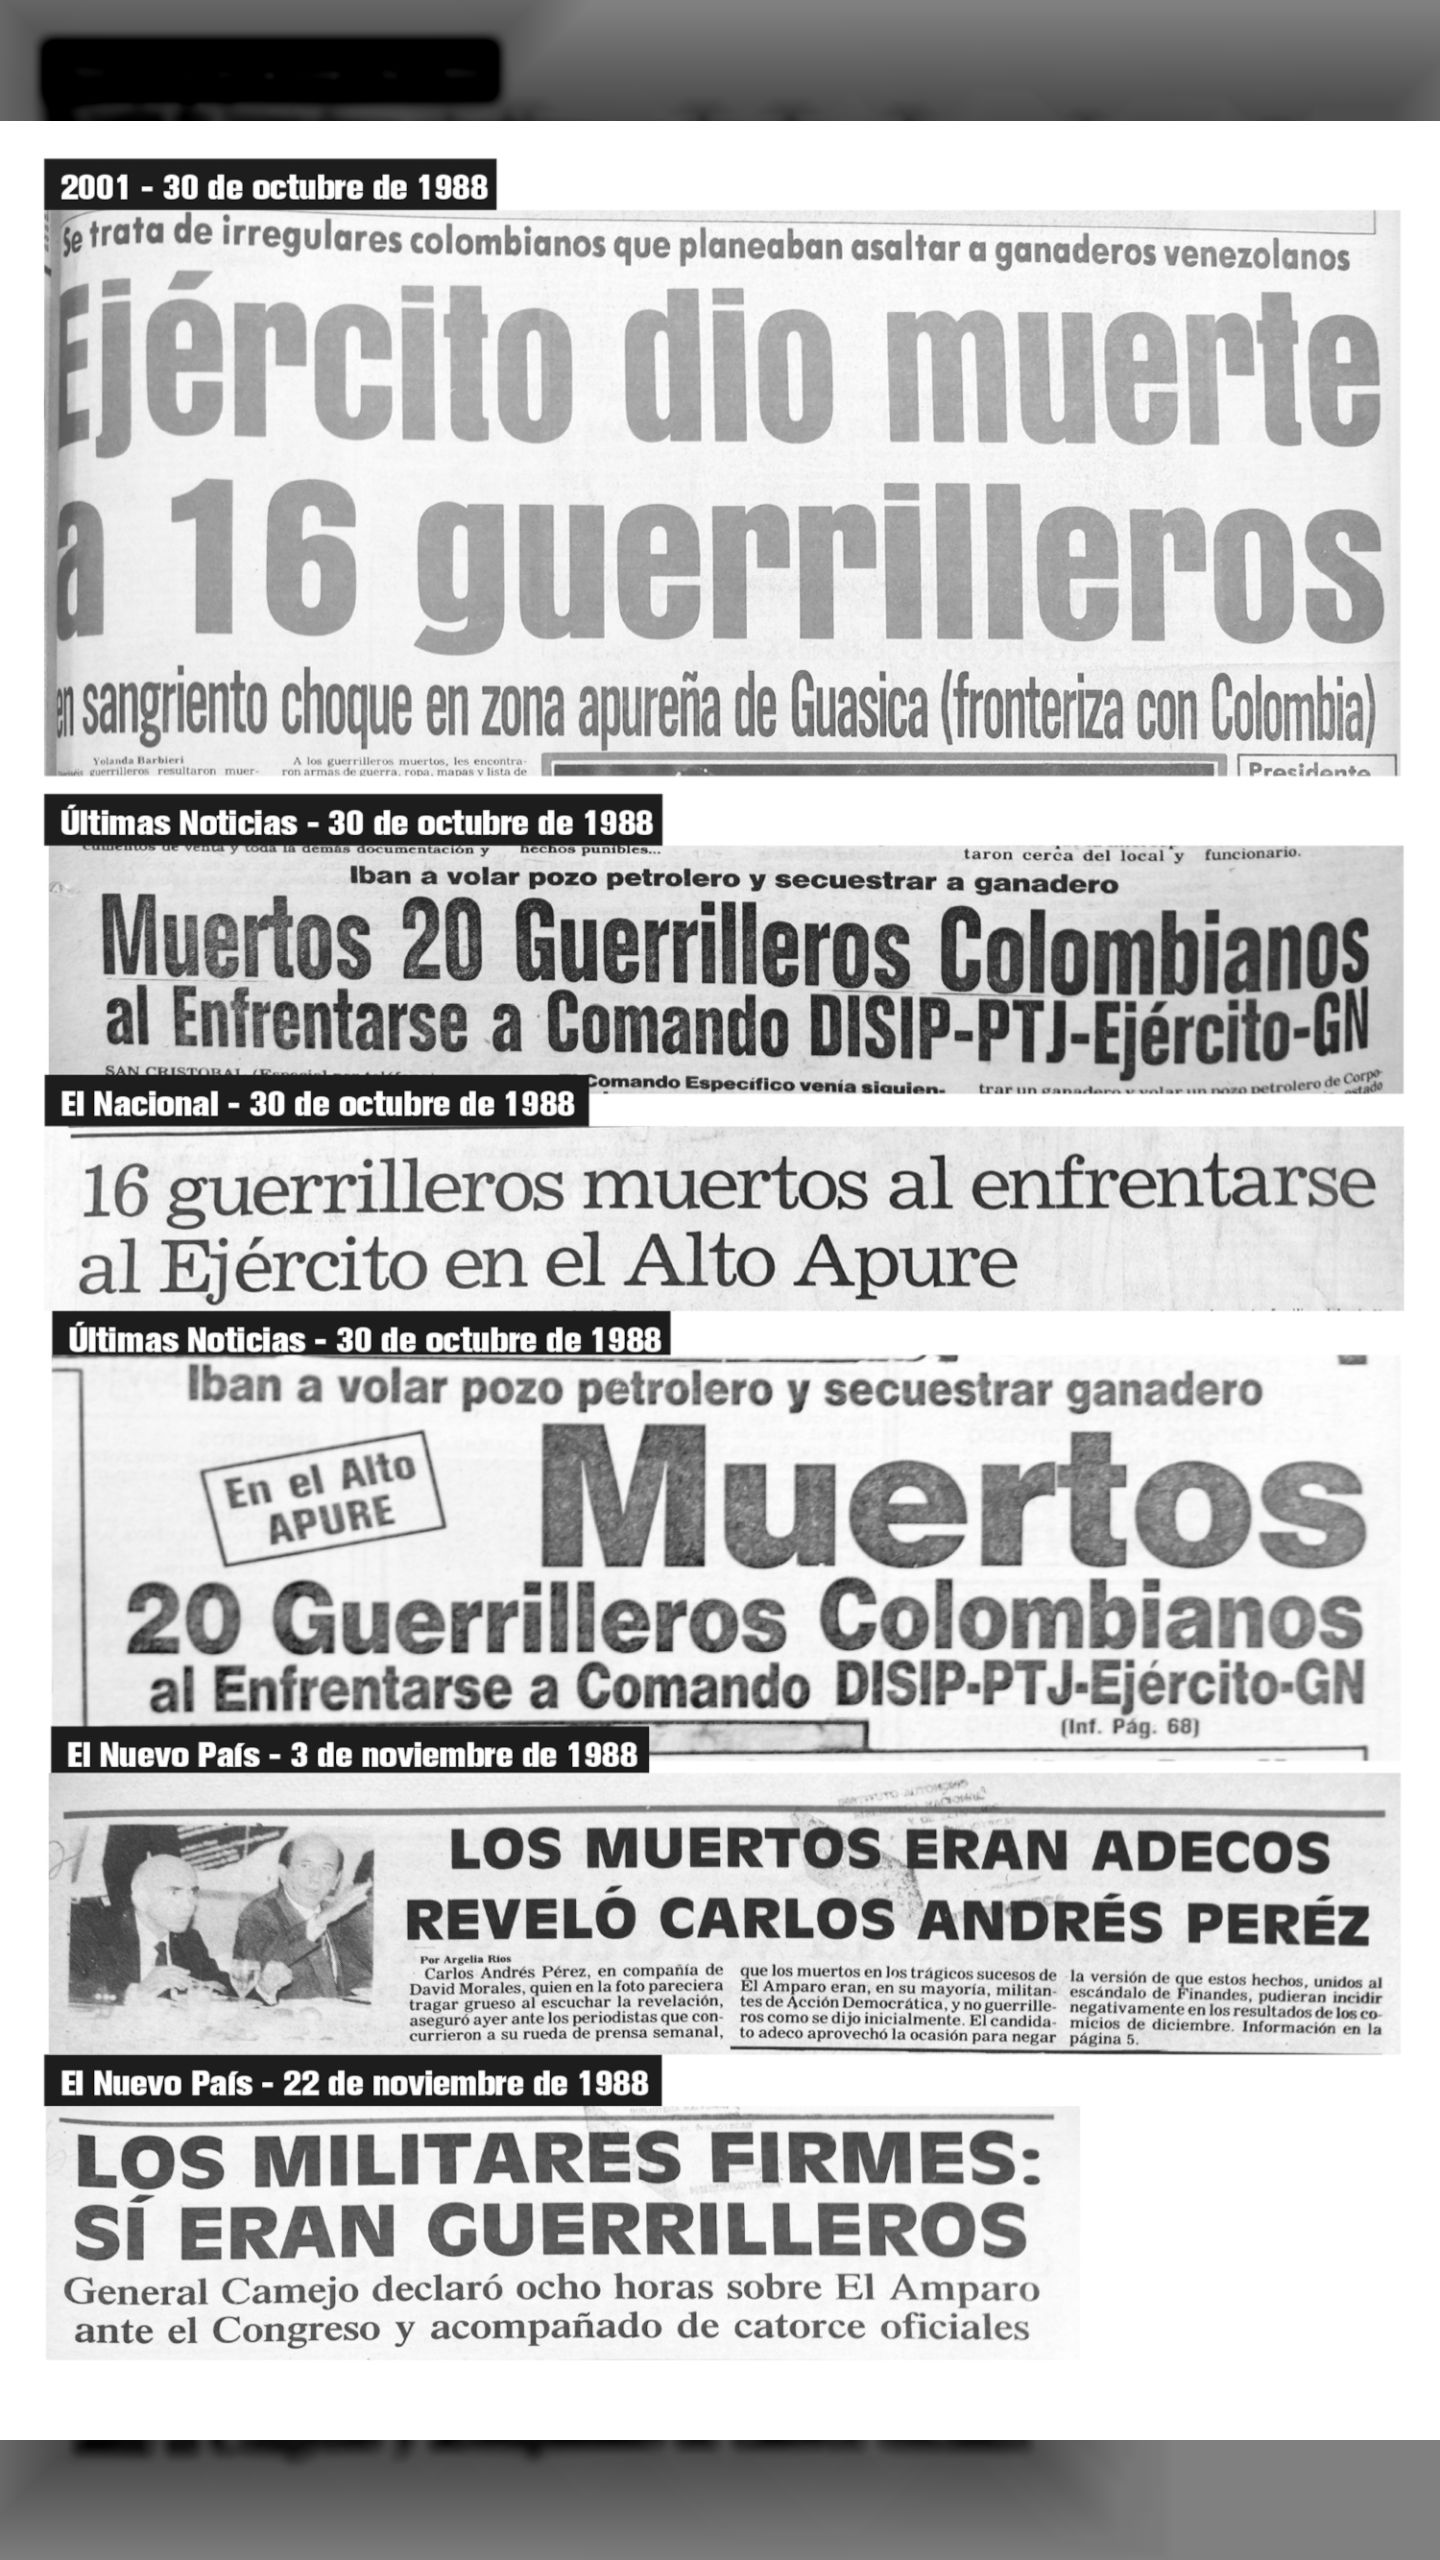 Fake news de La Masacre de El Amparo (30 de octubre de 1988)